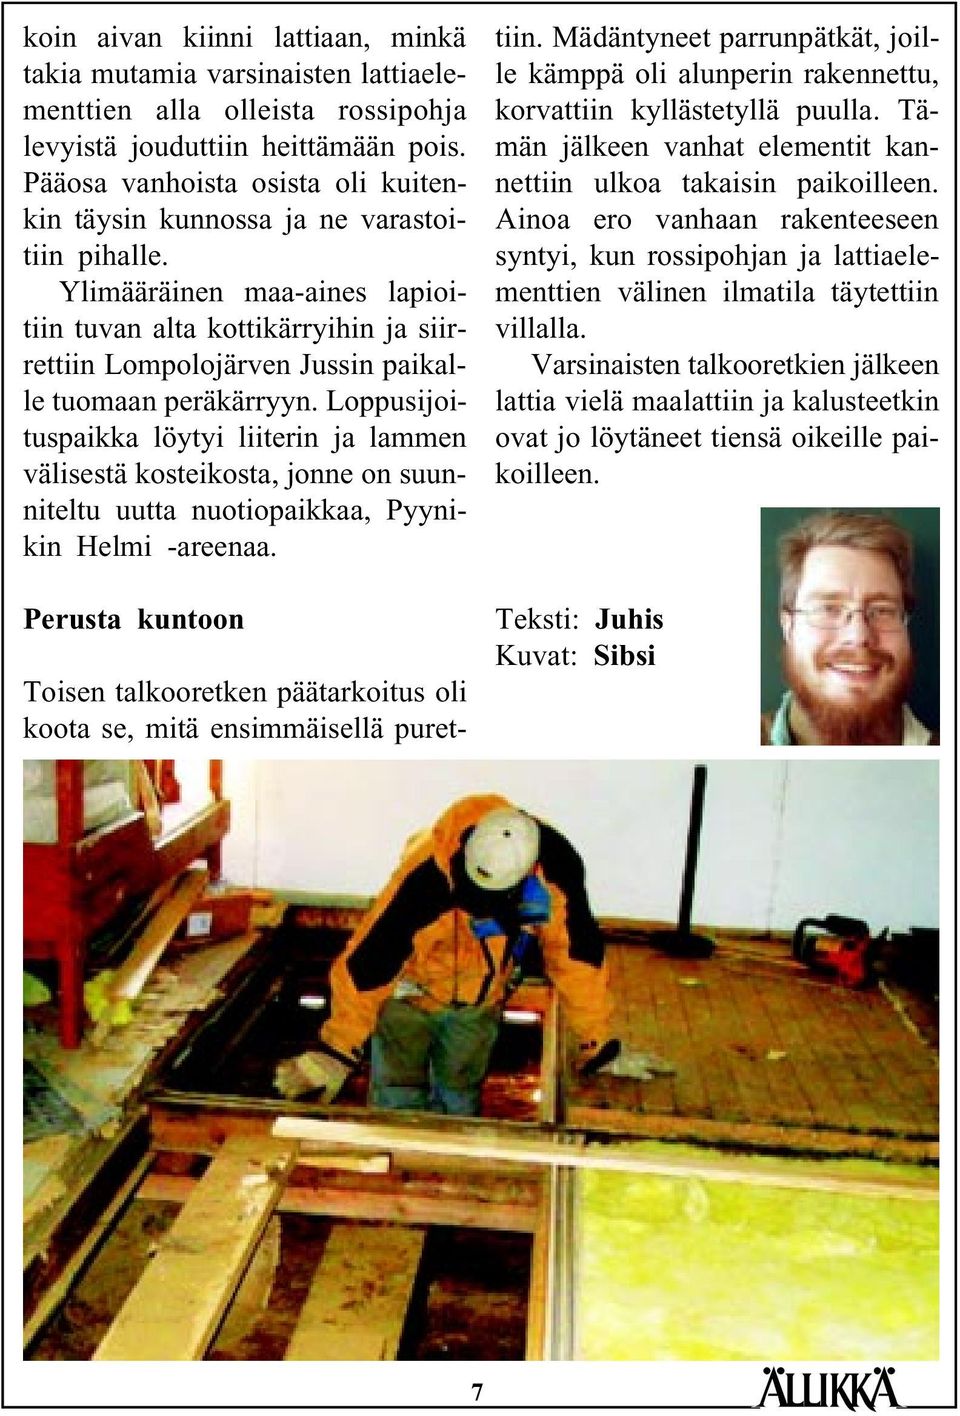 Ylimääräinen maa-aines lapioitiin tuvan alta kottikärryihin ja siirrettiin Lompolojärven Jussin paikalle tuomaan peräkärryyn.